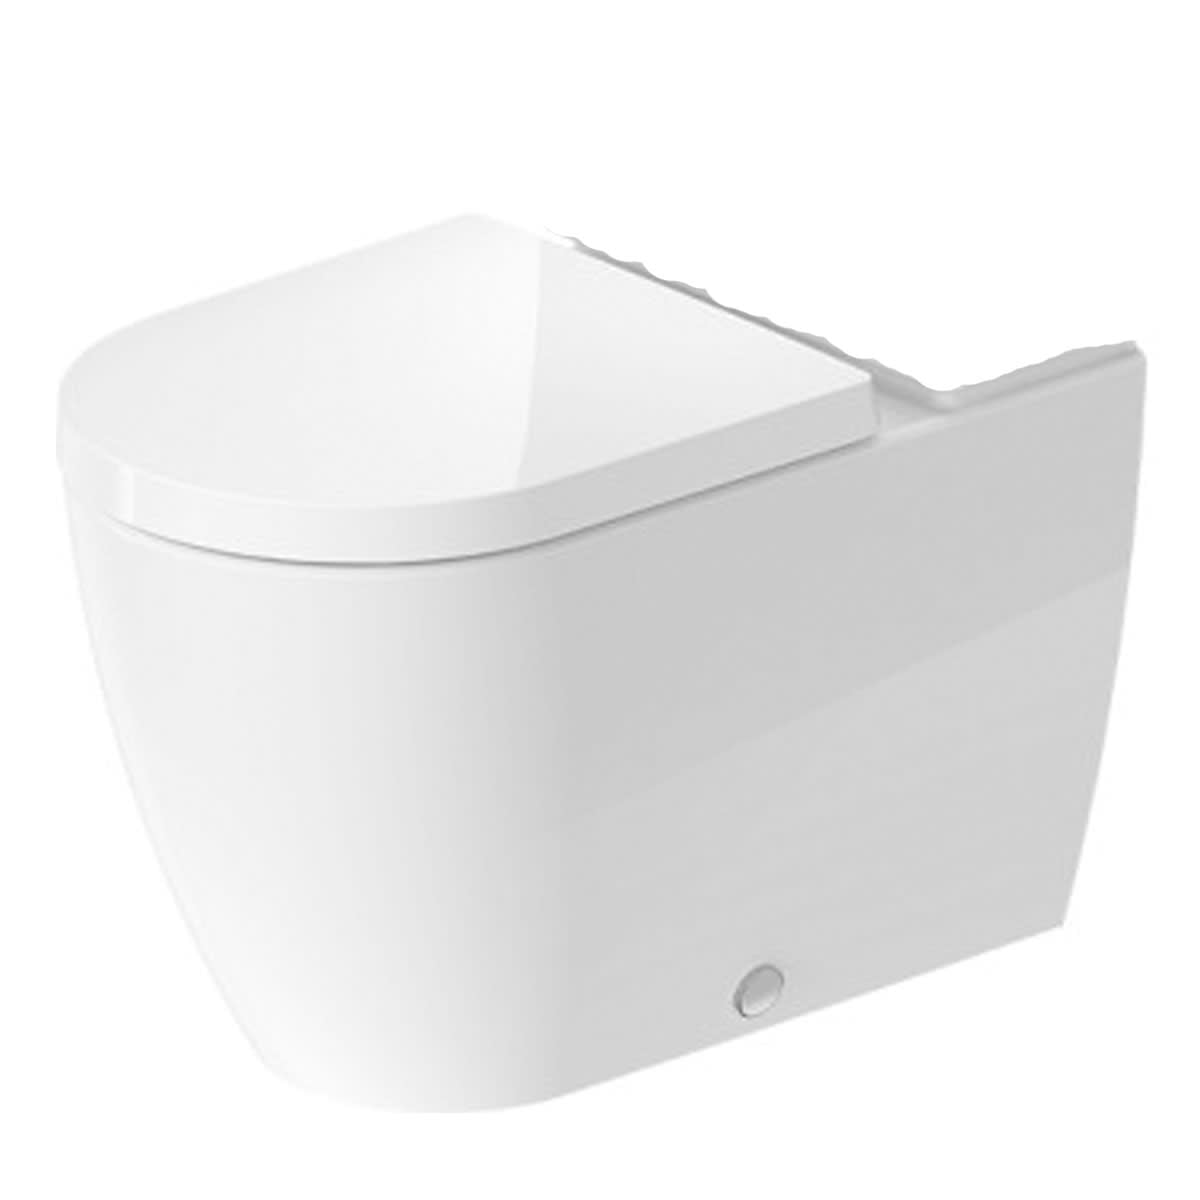 2170090092 Toilet Rear Outlet Bowl, White